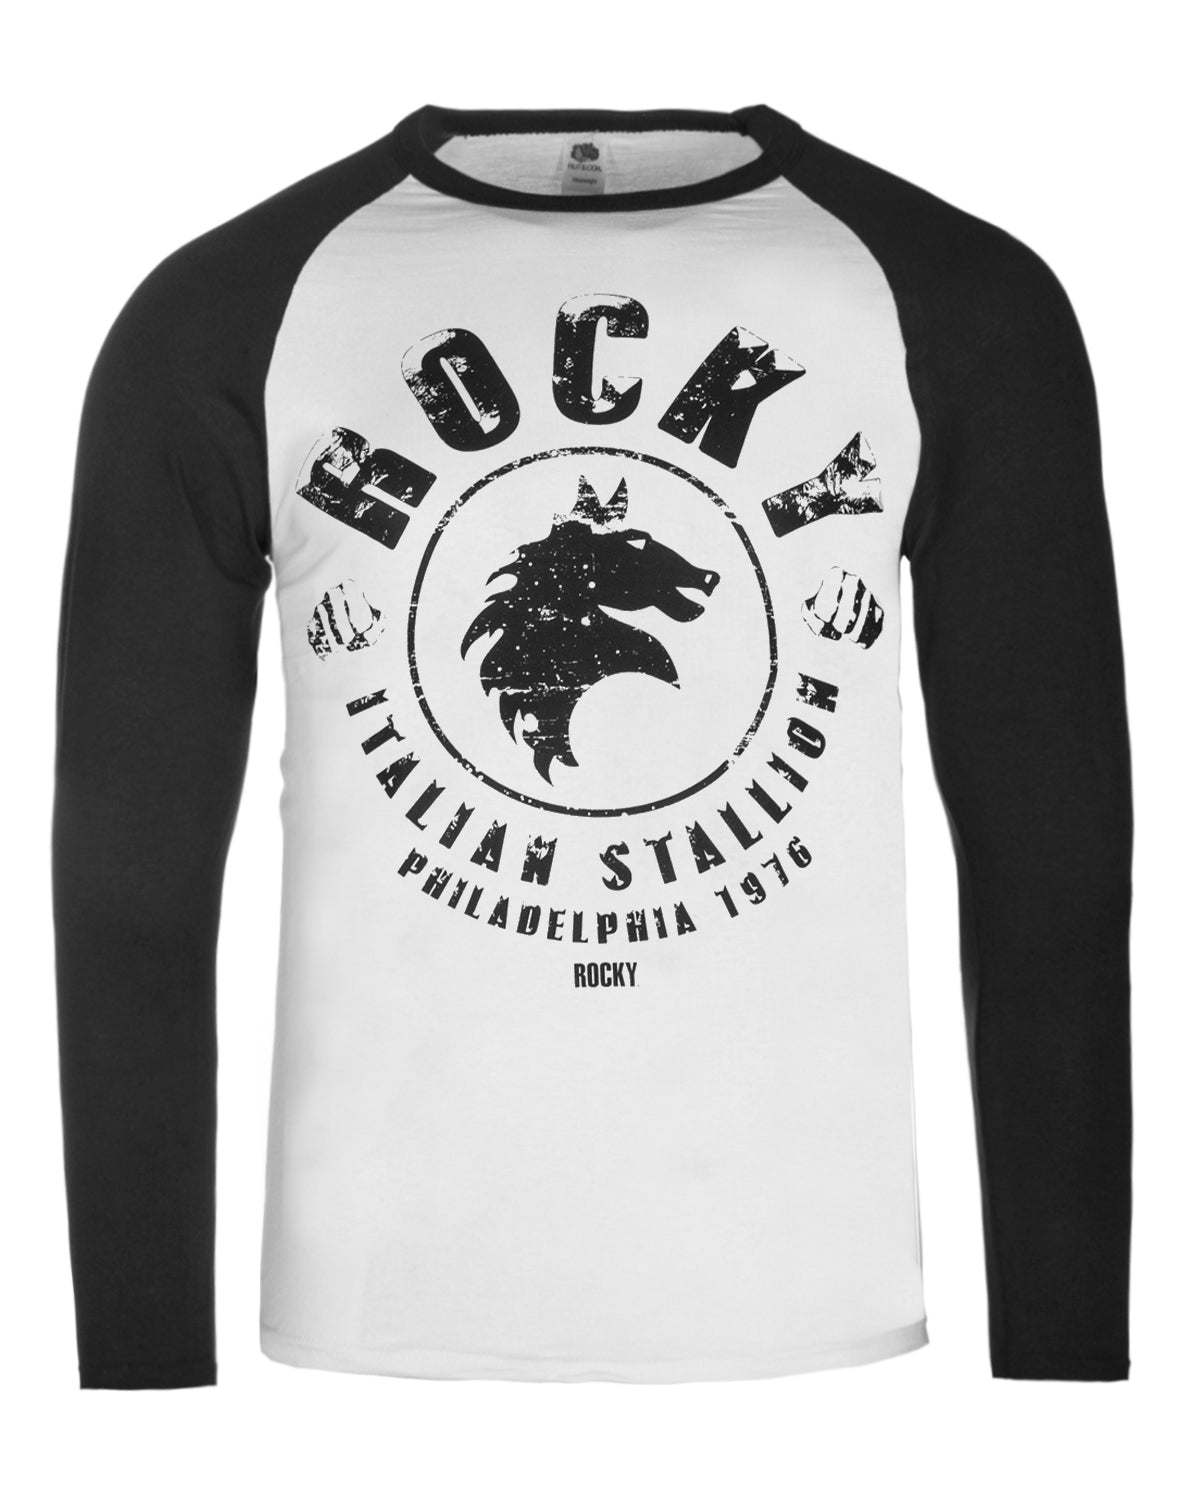 Print Shirt Rocky Italian Stallion raglan pitkähihainen - Valkoinen/Musta